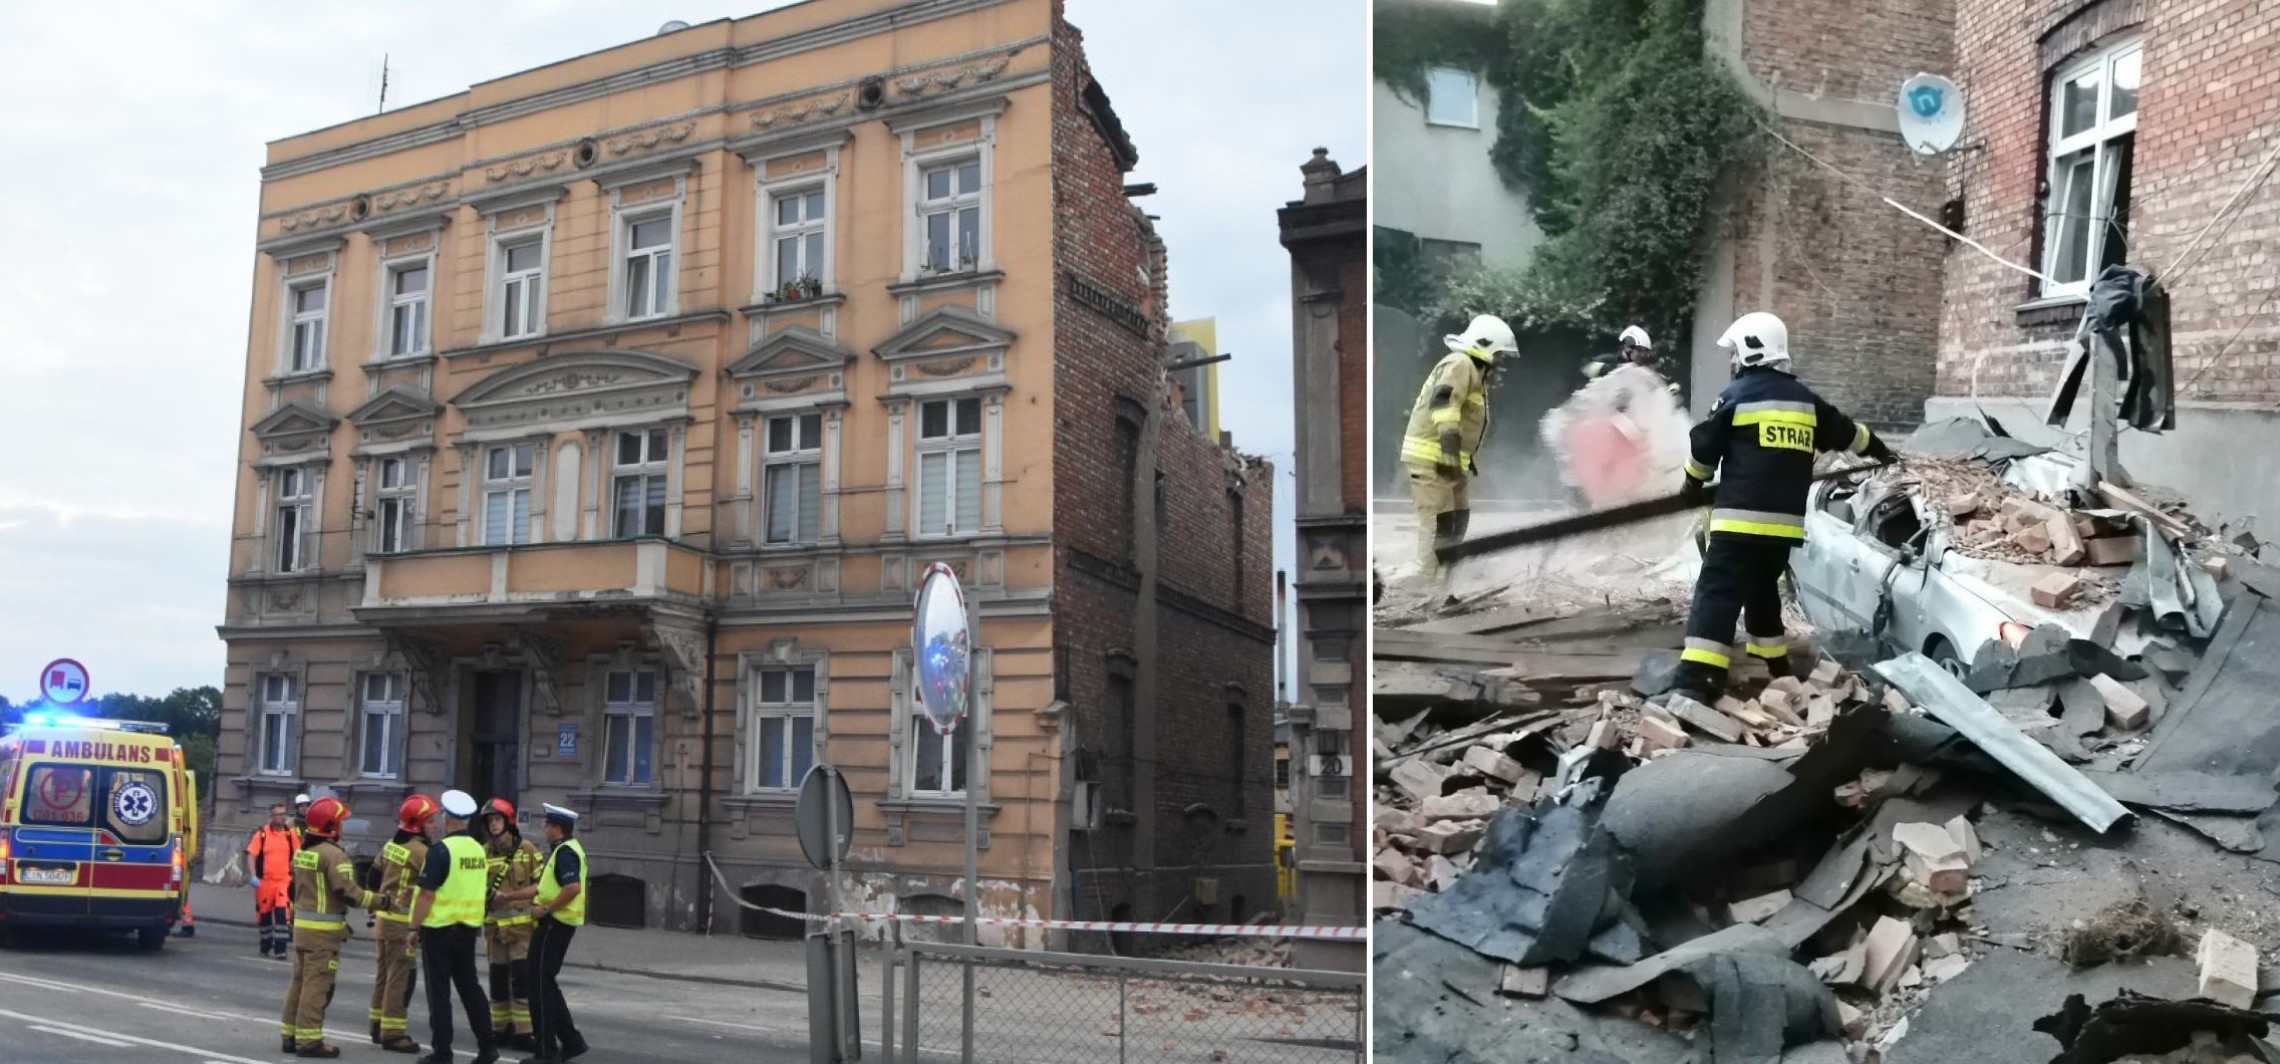 Inowrocław - Wybuch gazu w kamienicy w centrum Inowrocławia